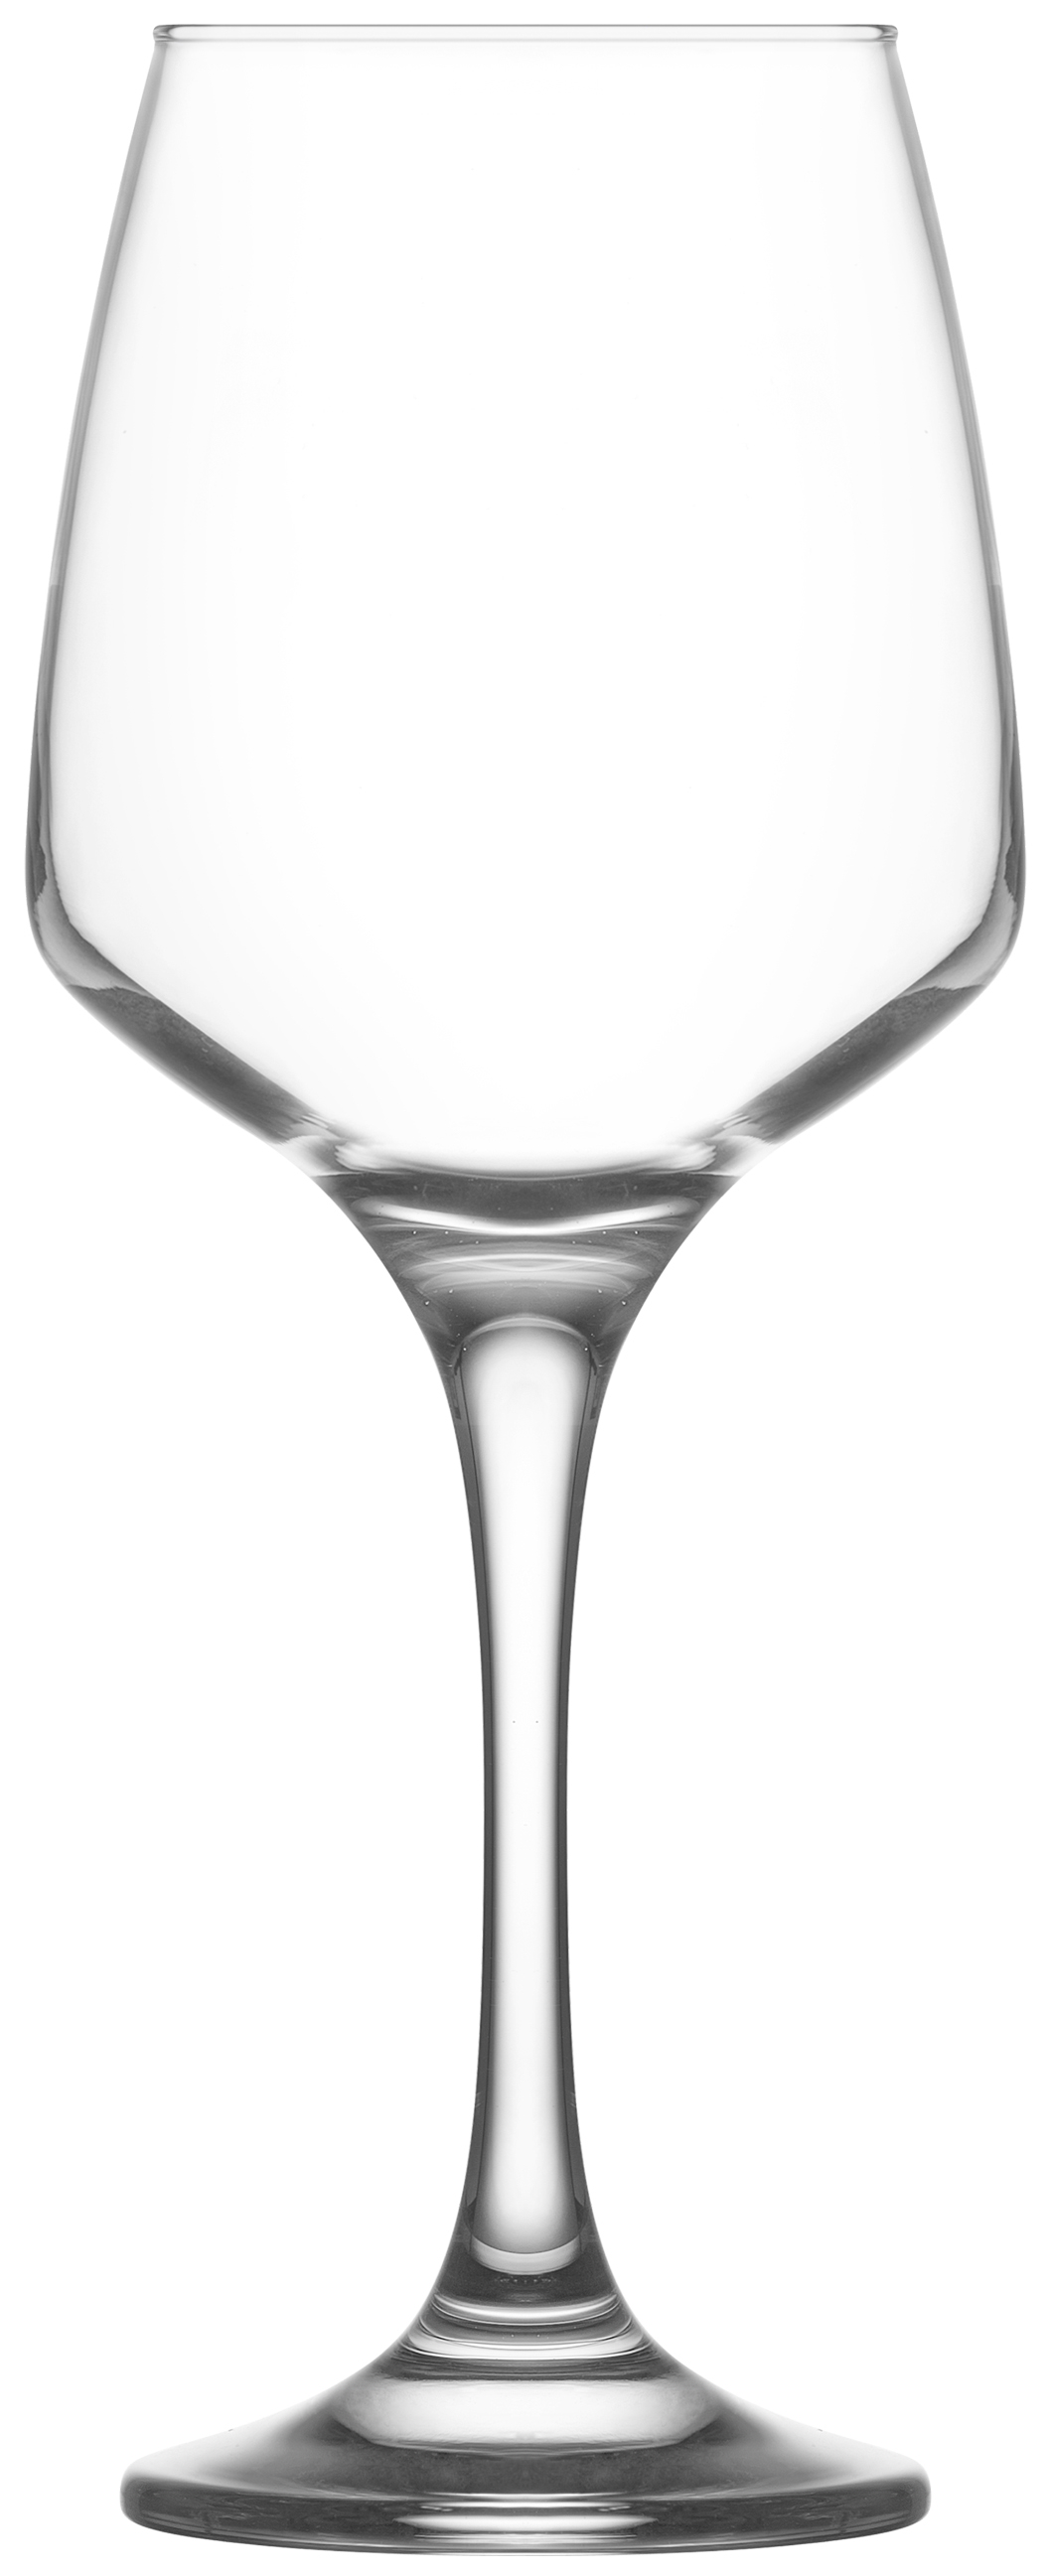 Ποτήρι Κρασιού Σετ 6τμχ Γυάλινο LAV 400ml LVLAL59240F (Υλικό: Γυαλί, Χρώμα: Διάφανο , Μέγεθος: Κολωνάτο) - LAV - LVLAL59240F 178880